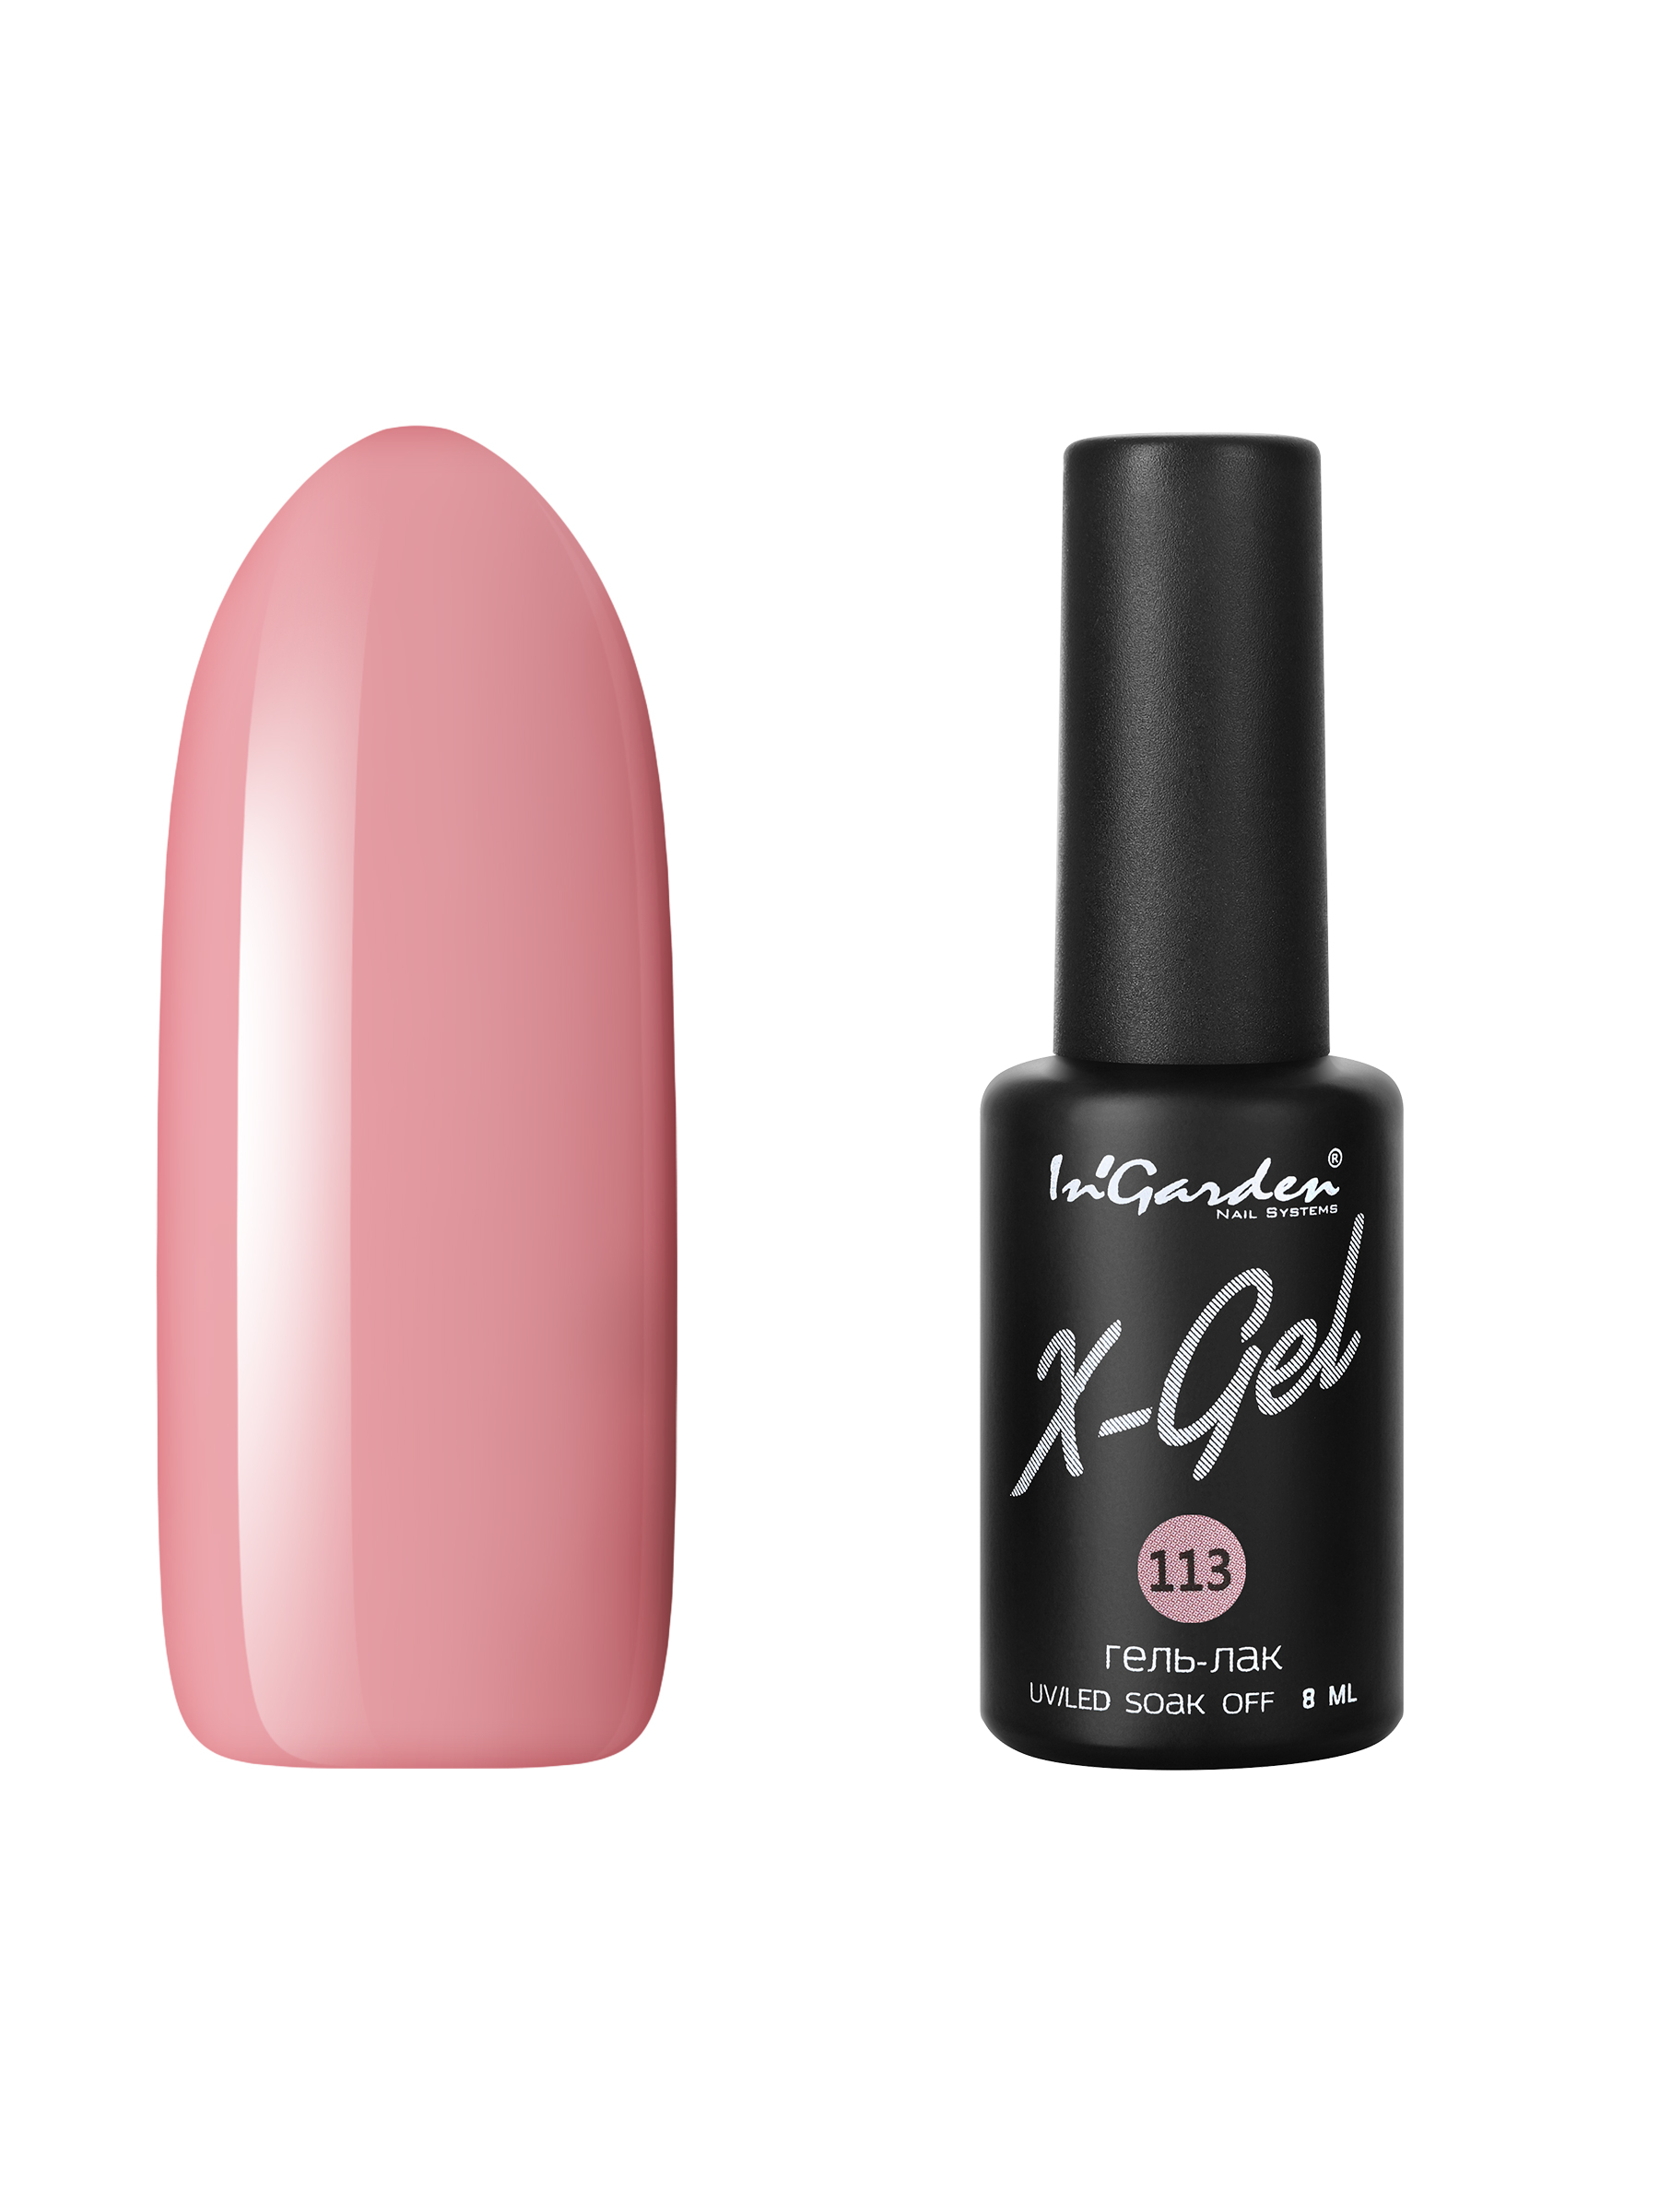 Купить Гель лак для ногтей In’Garden X-Gel N° 113 пыльно-розовый плотный 8 мл, In'Garden